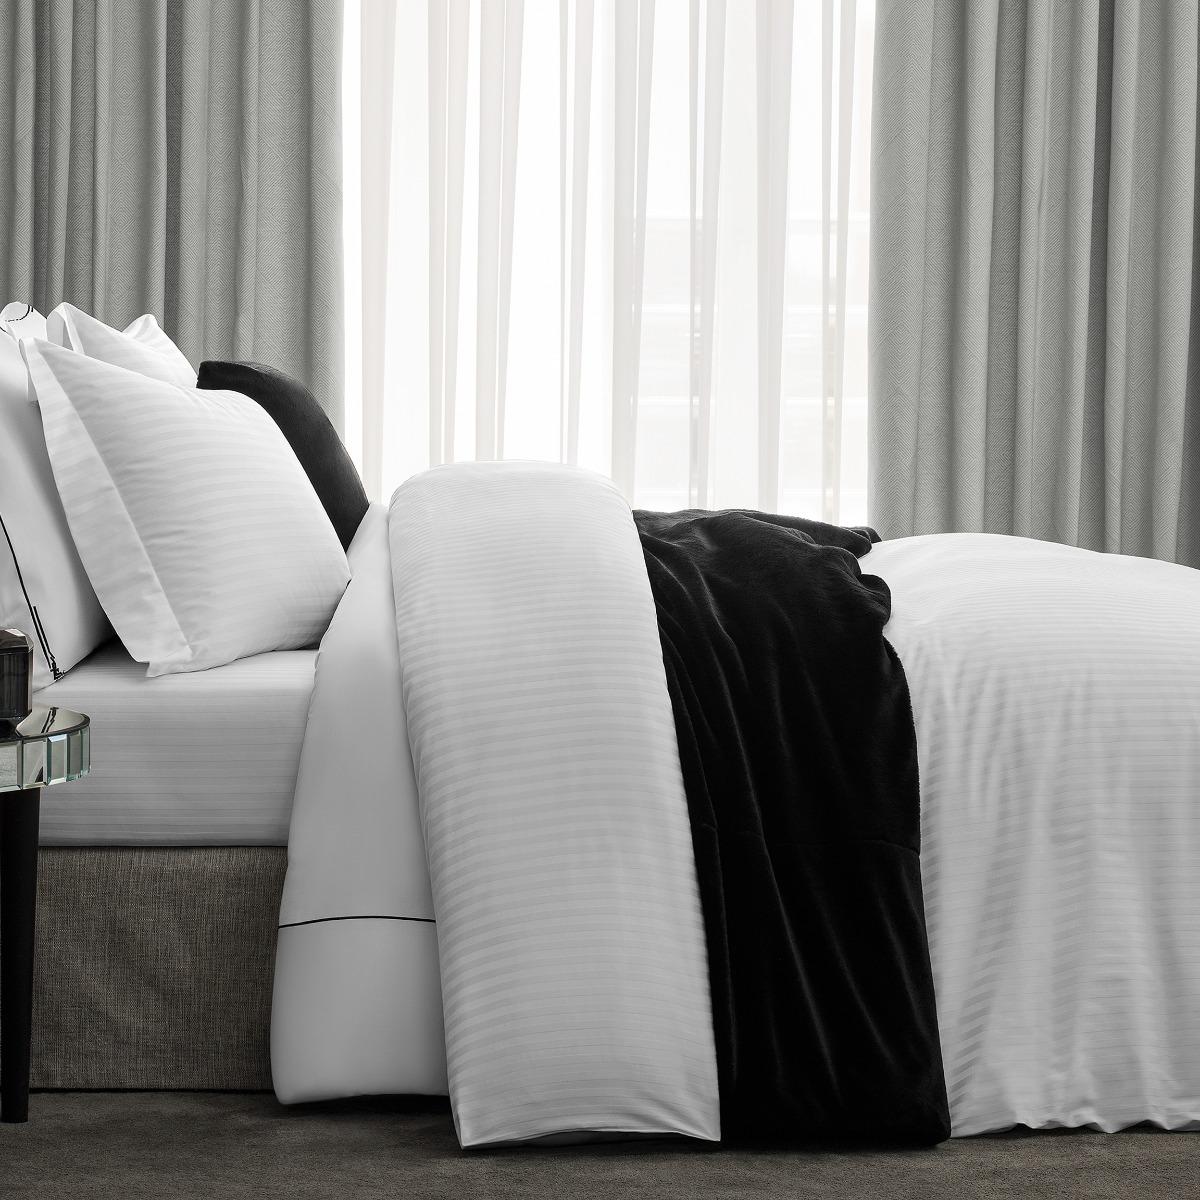 Комплект постельного белья Togas Кирос Двуспальный кинг сайз белый, размер Двуспальный евро - фото 2